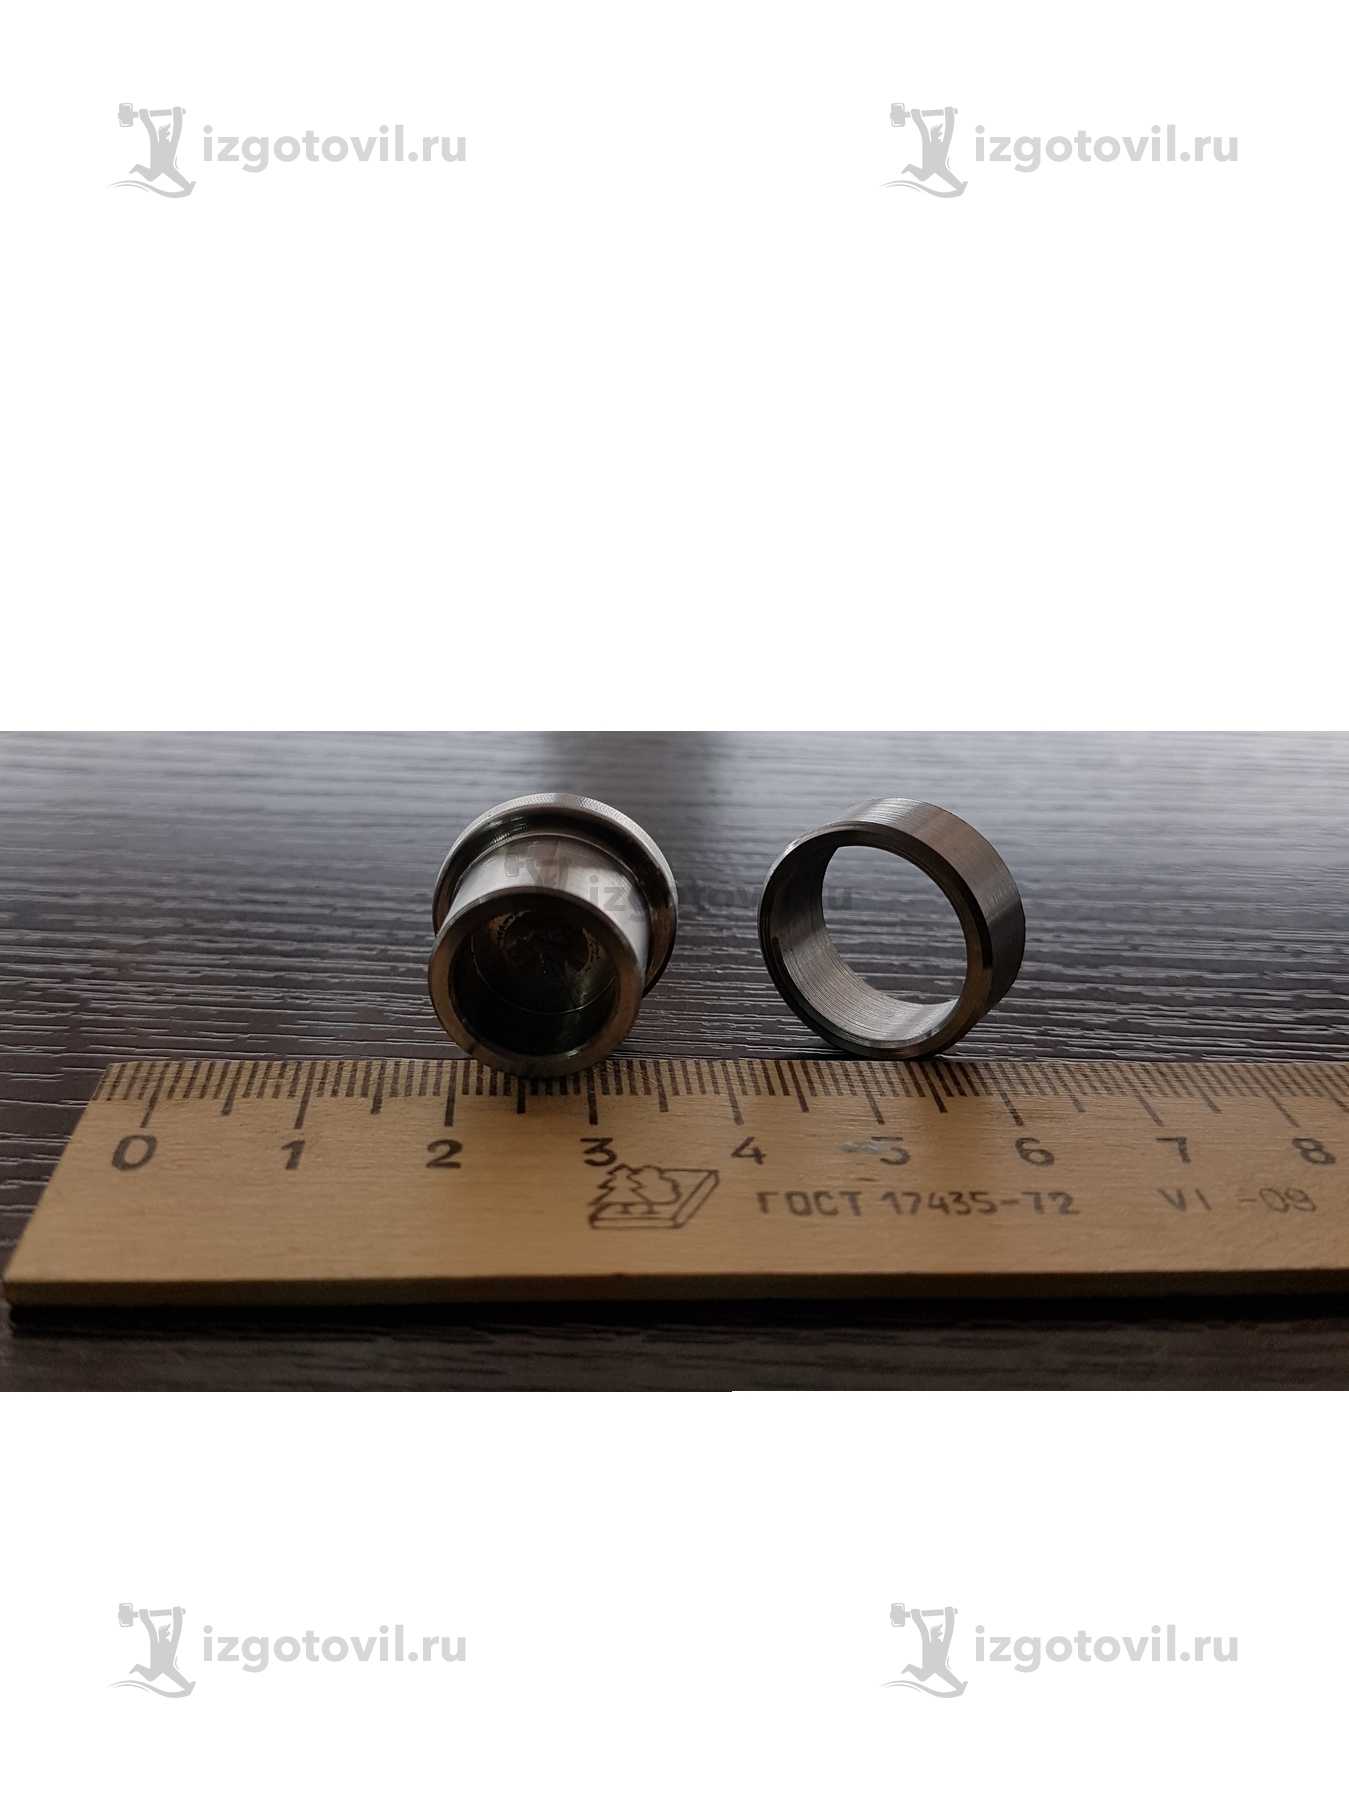 Токарная обработка металла: изготовление кольца и крышки.